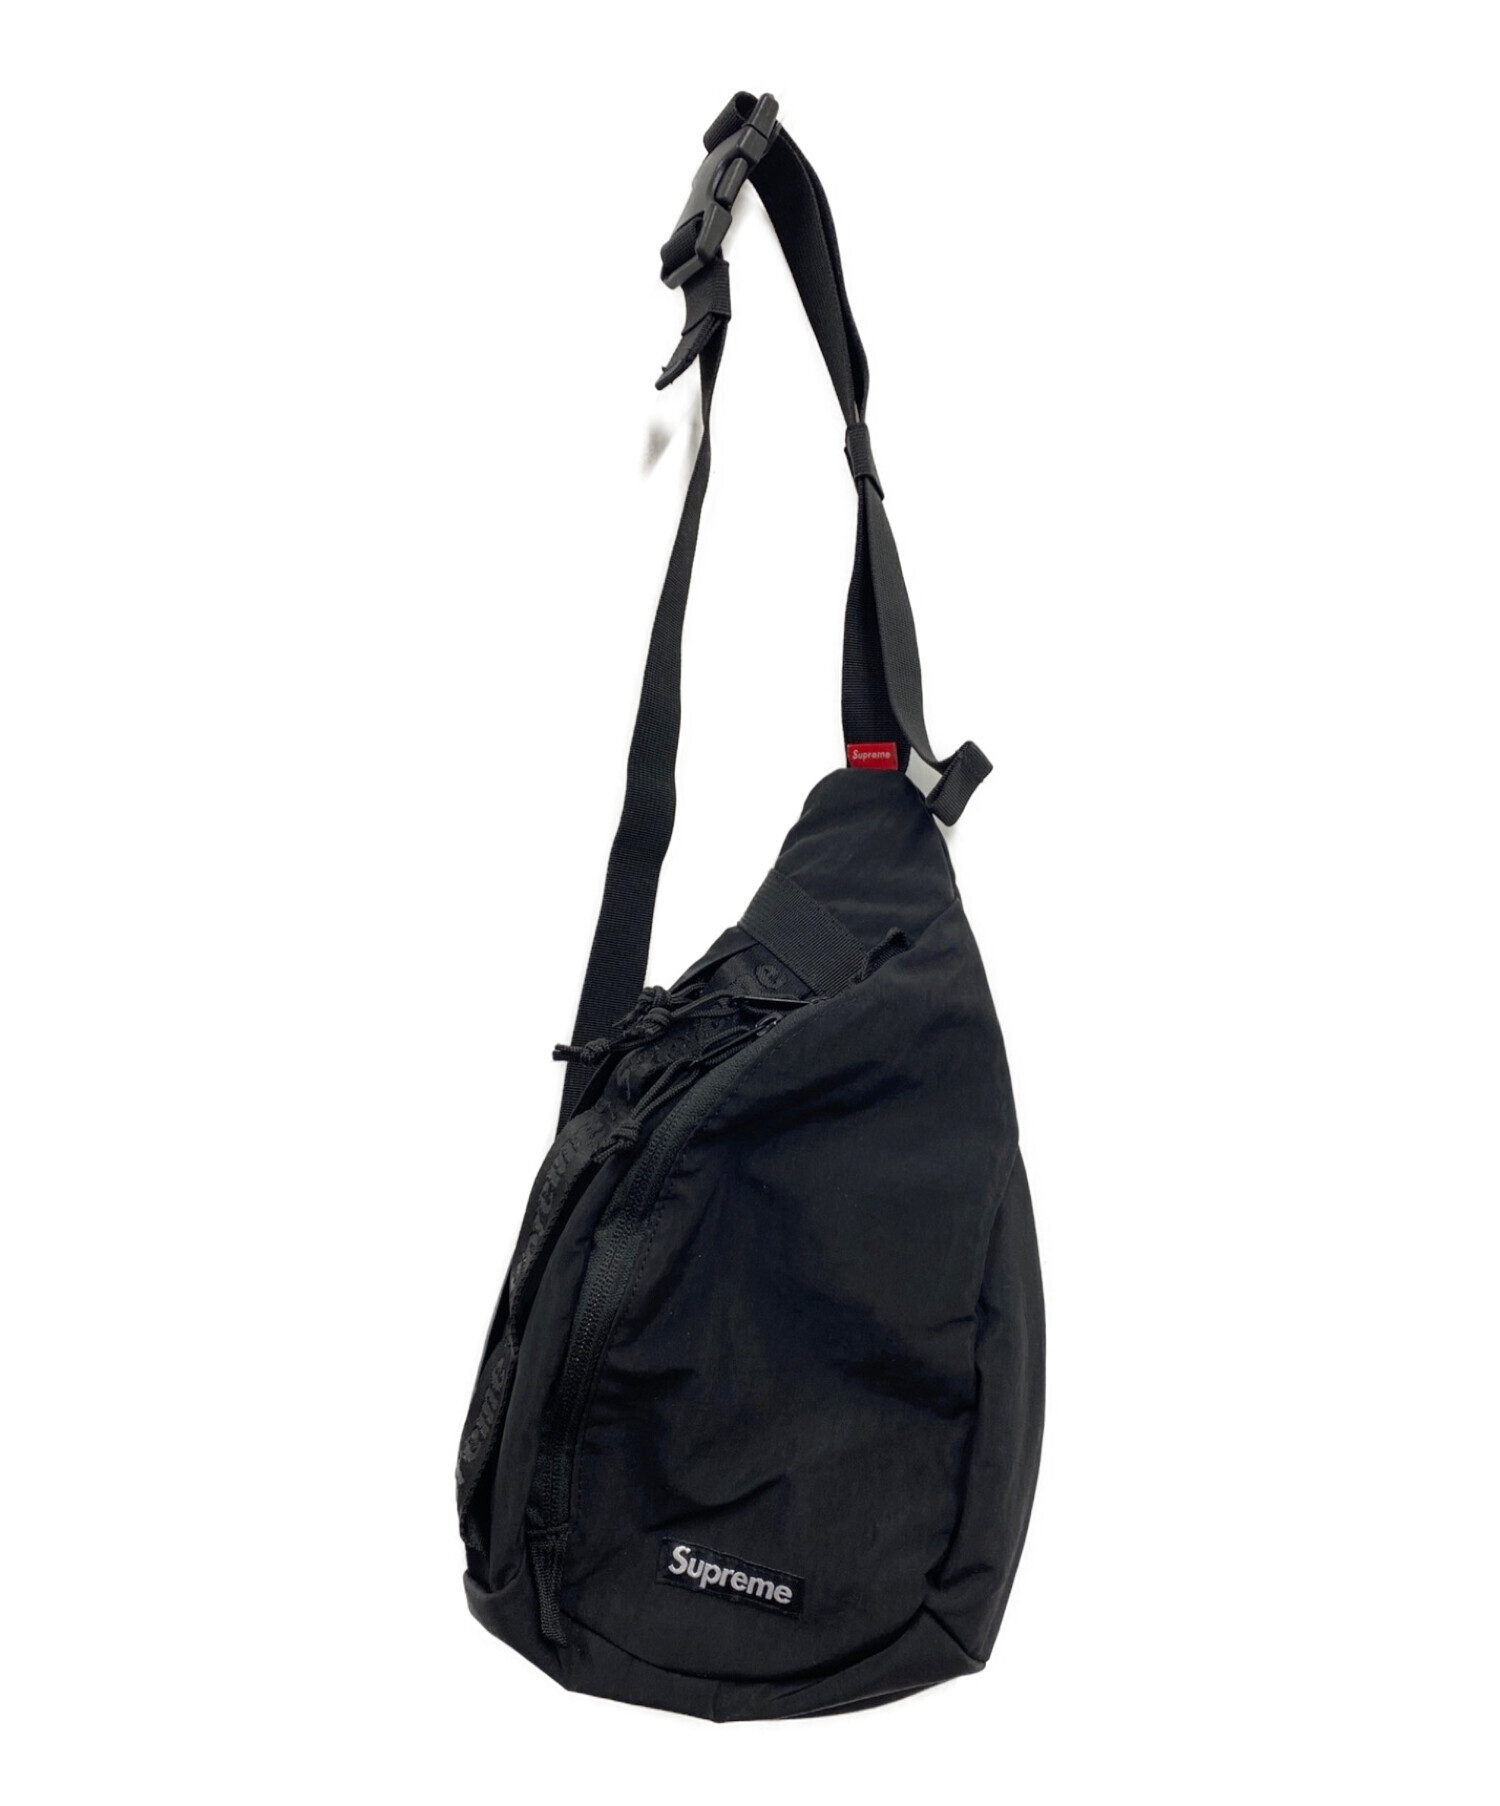 SUPREME シュプリーム AW sling bag スリングバッグ ワンショルダーバッグ ブラック